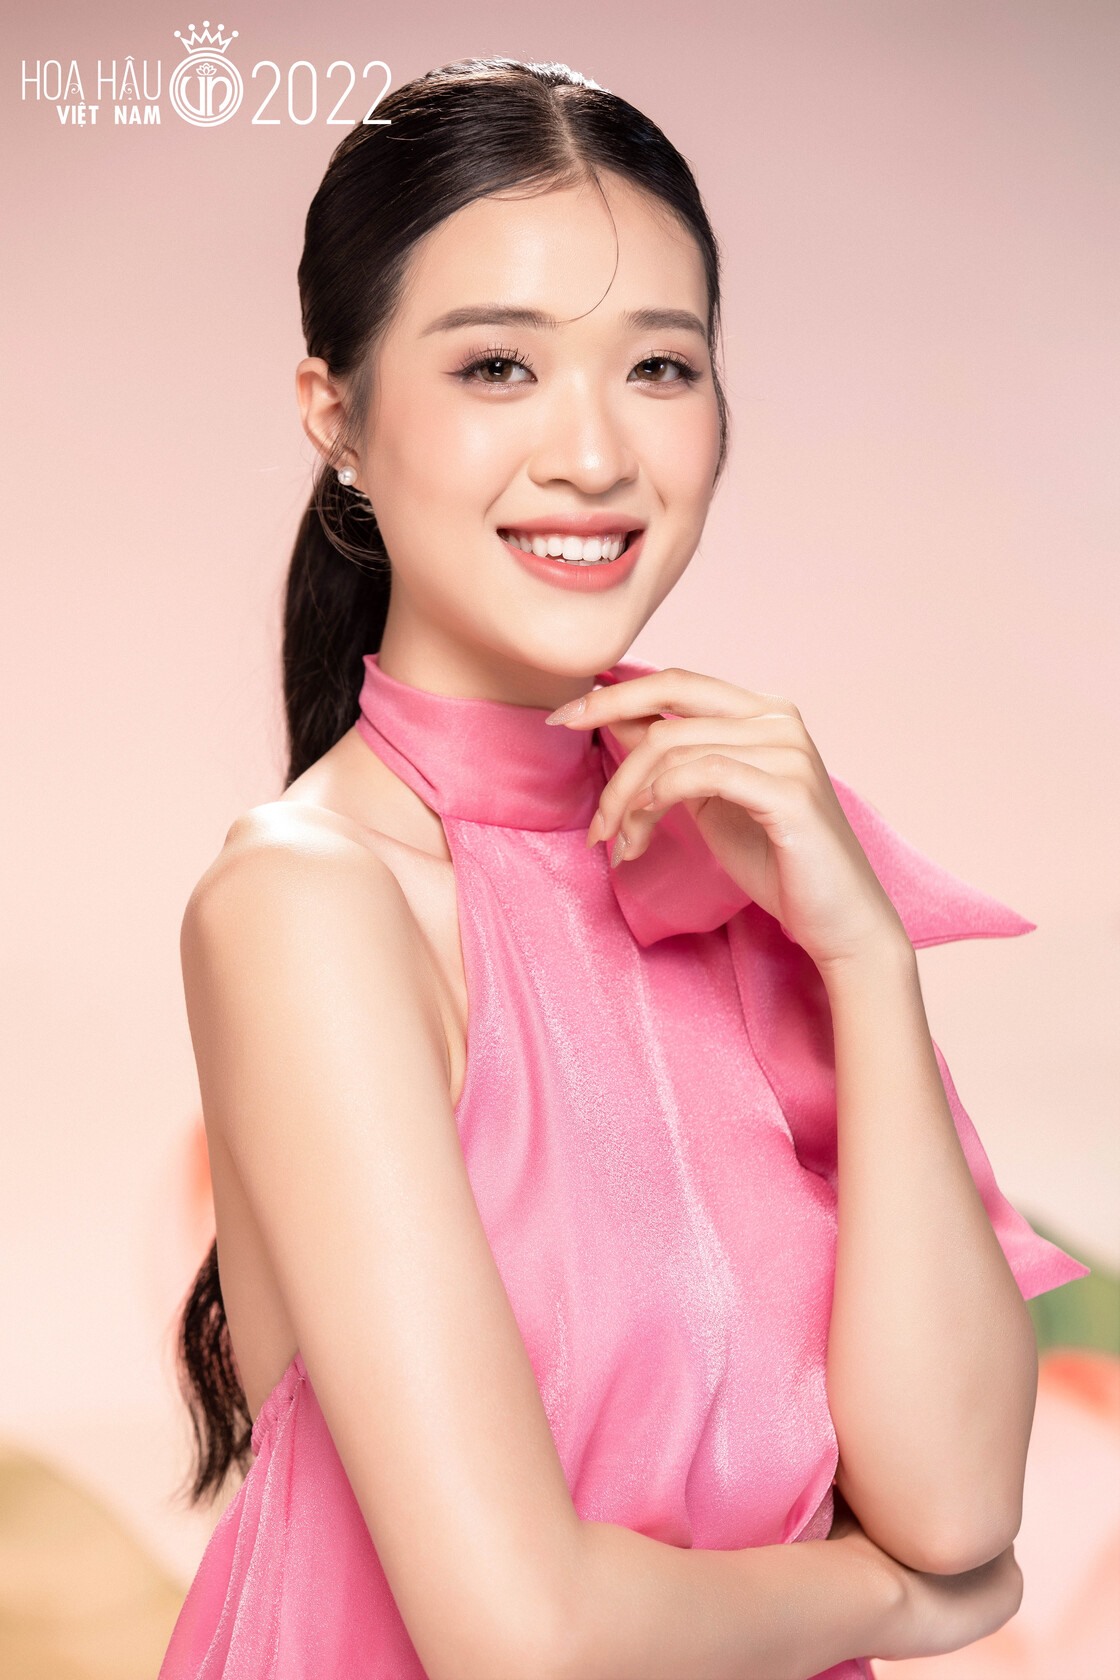 5 thí sinh có chiều cao khủng nhất tại Hoa hậu Việt Nam 2022